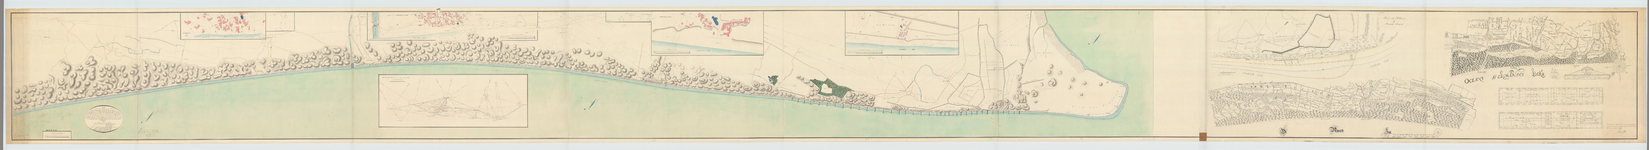 OAD 7829 kaart van de Zuid-Hollandsche kust langs de Noordzee, van bezuiden Zandvoort tot de hoek van Holland, waarop ...